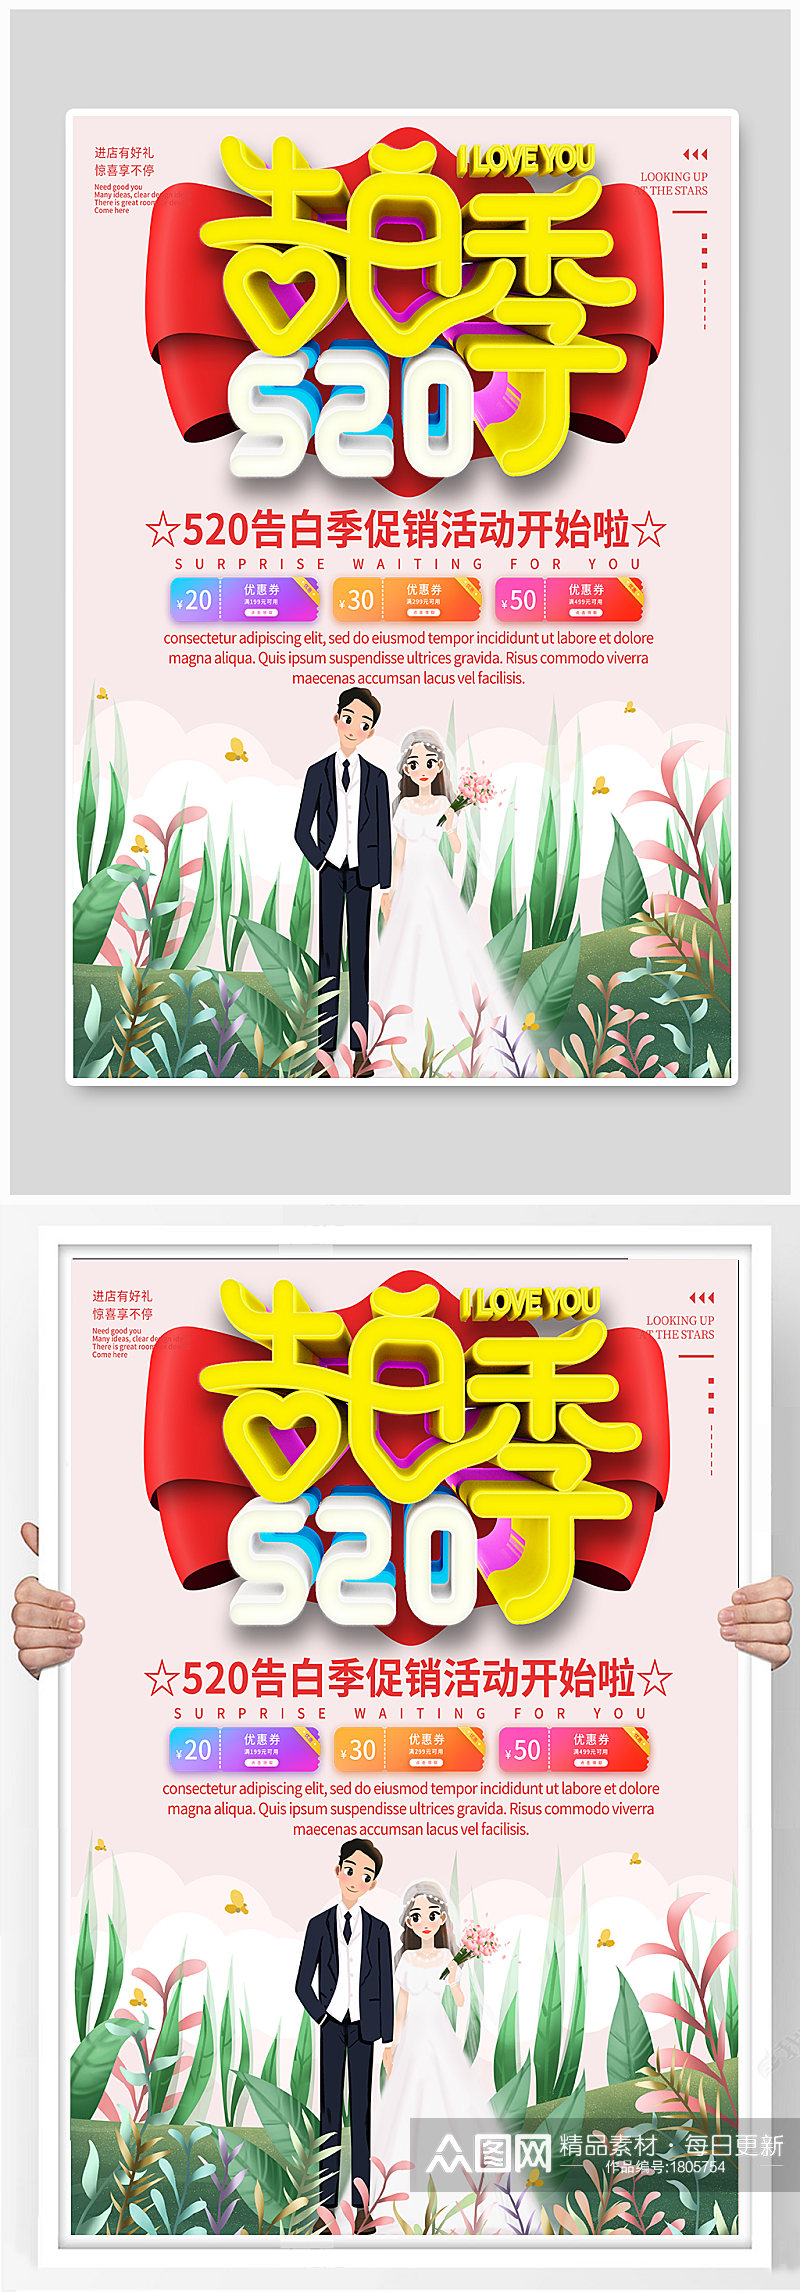 插画风520促销宣传海报素材